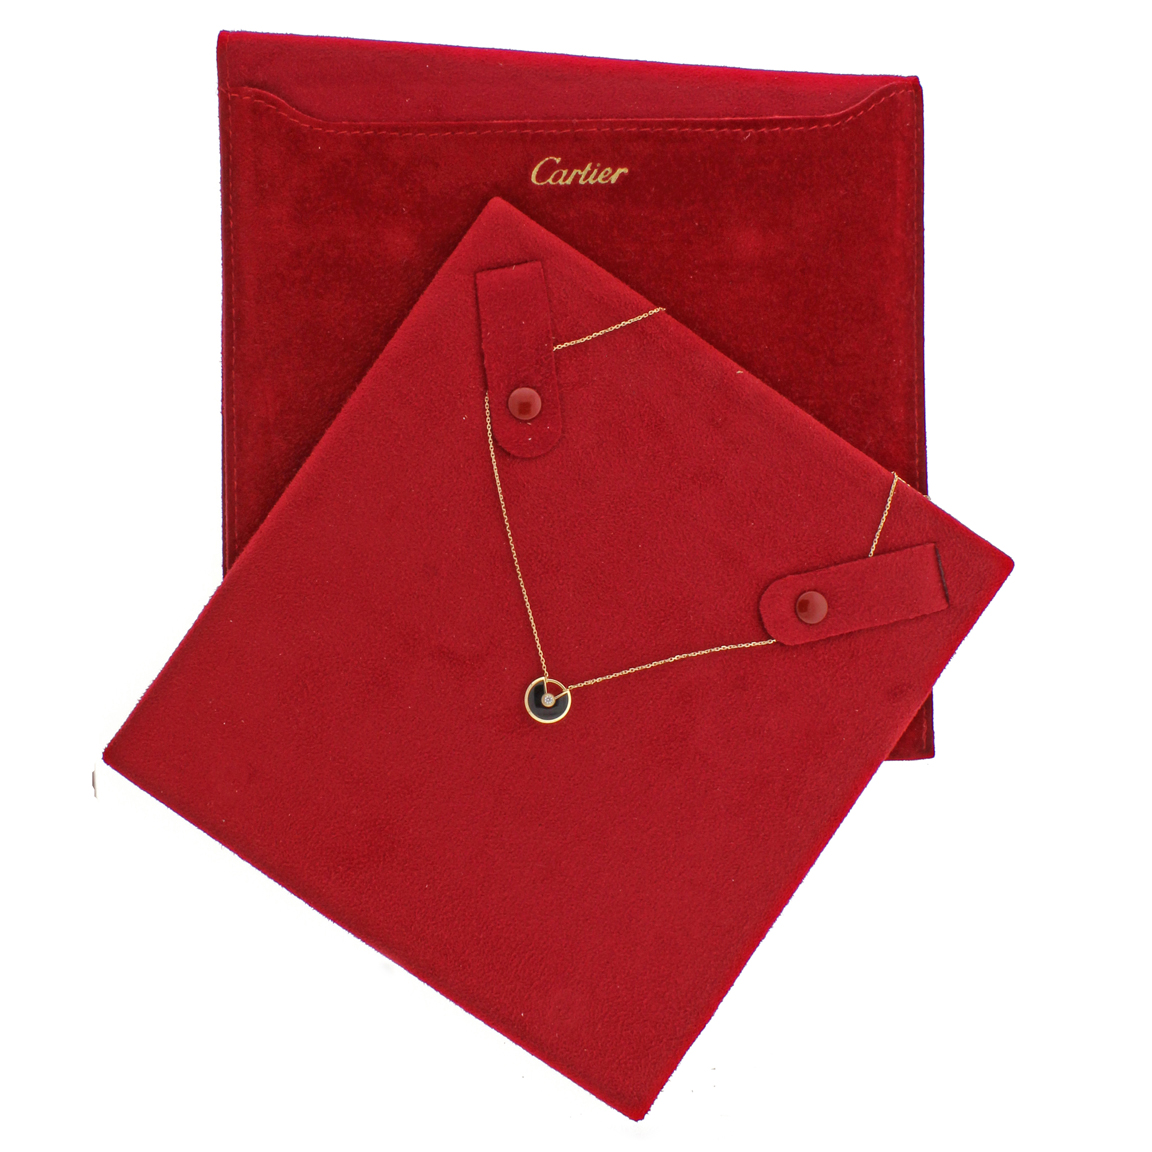 Cartier lucky red envelopes